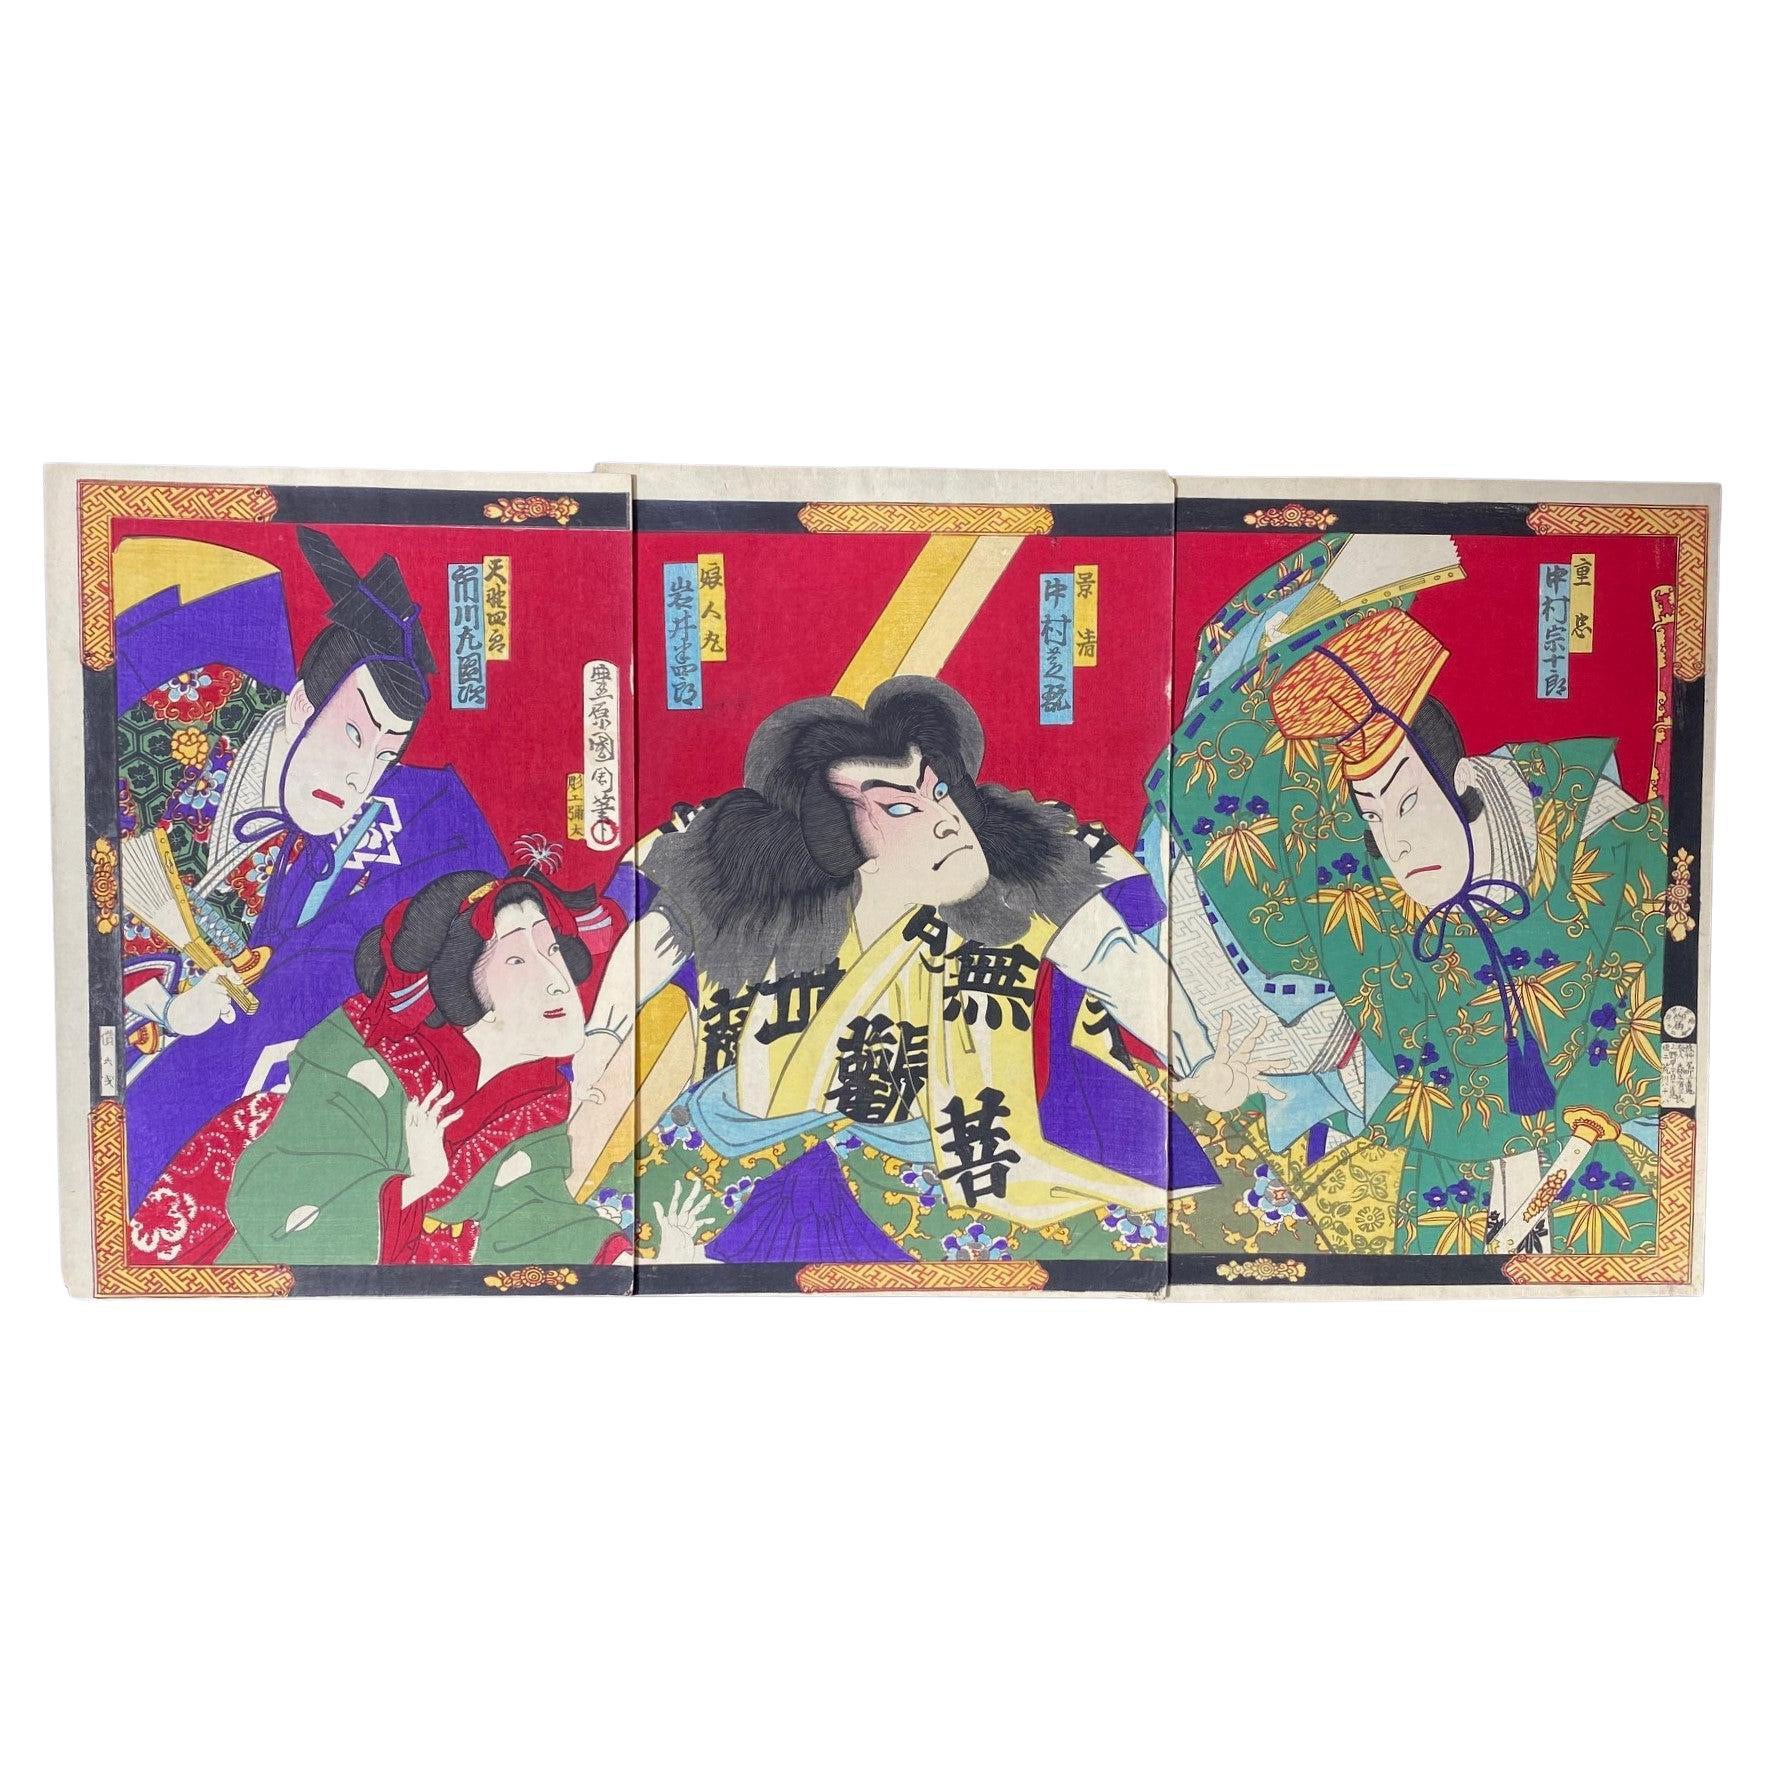  Toyohara Kunichika Japanisches Triptychon, Holzschnitt mit Kabuki-Theaterdarstellern